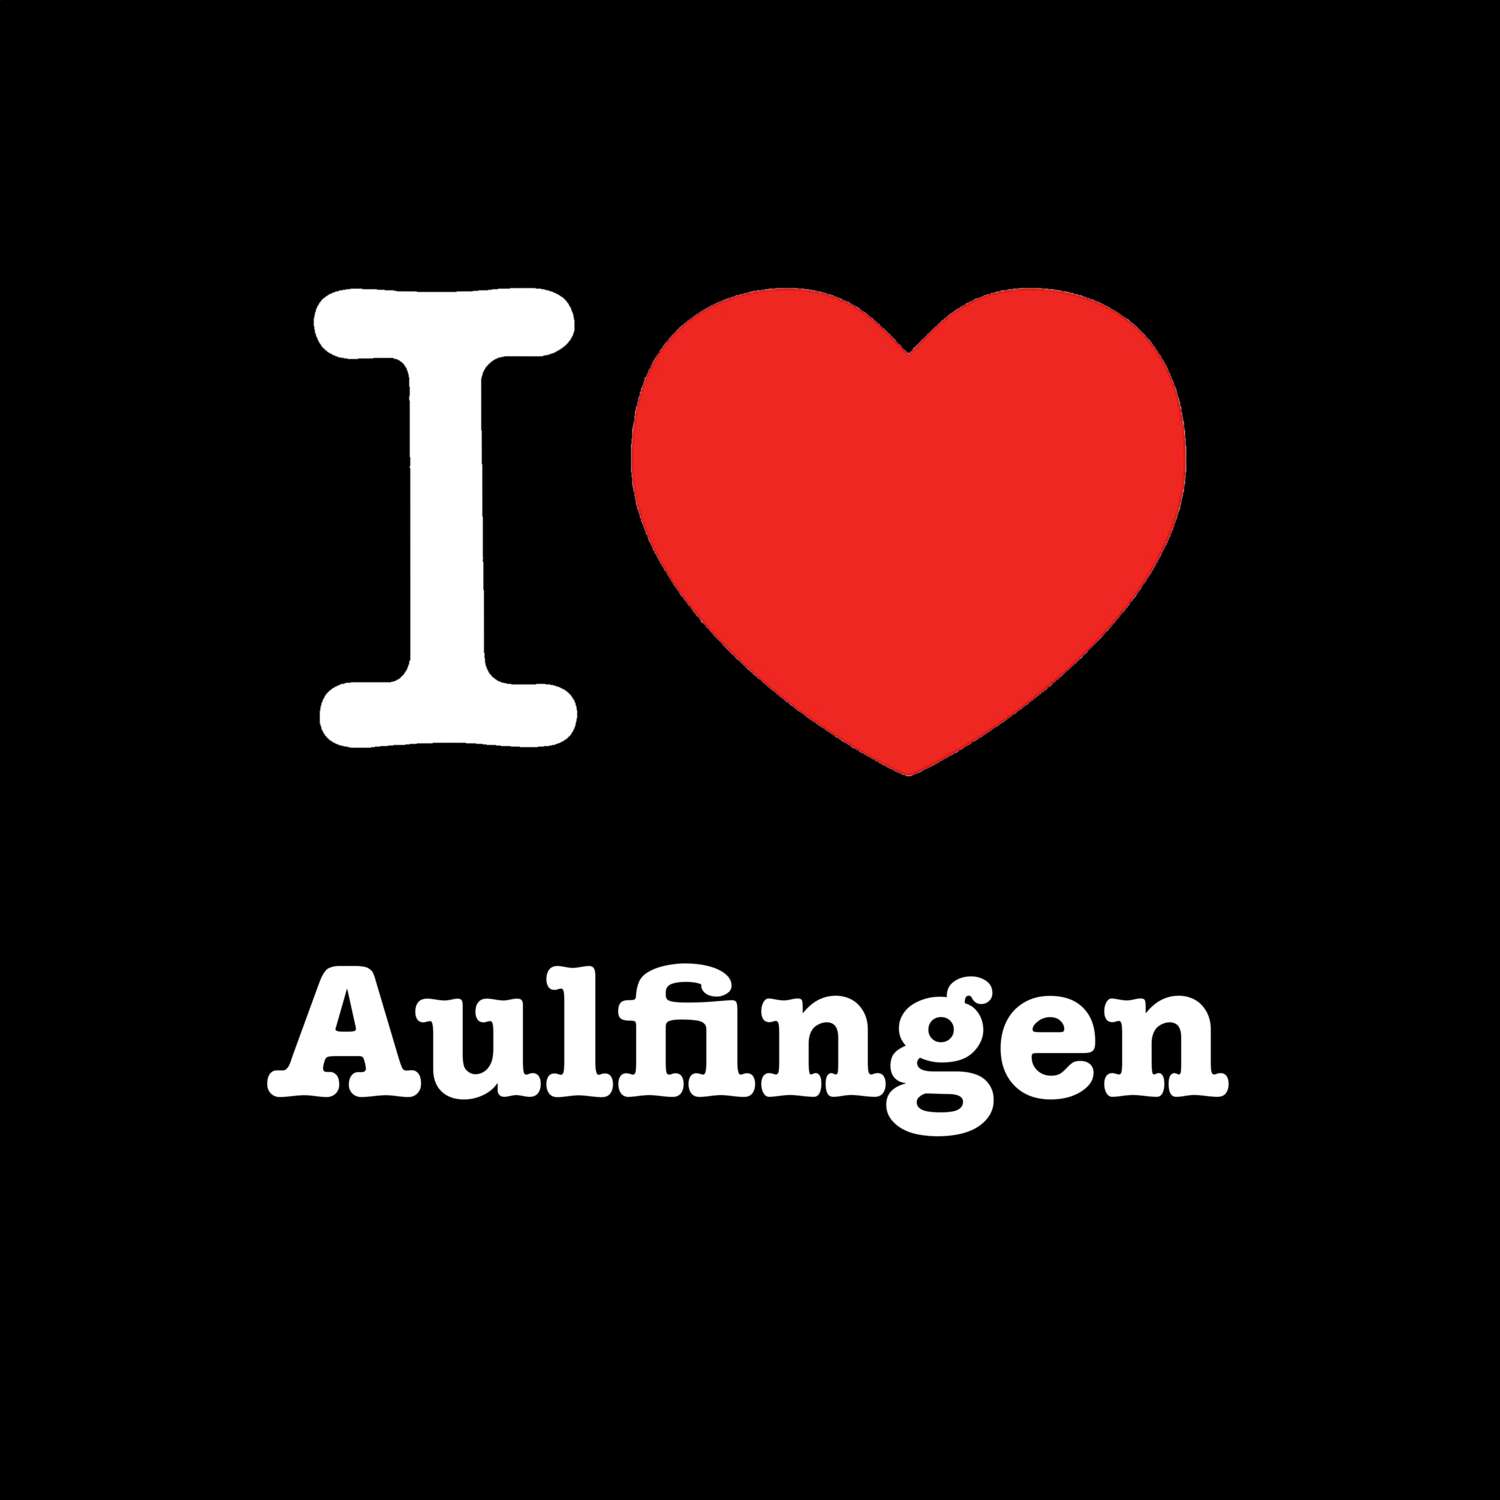 Aulfingen T-Shirt »I love«